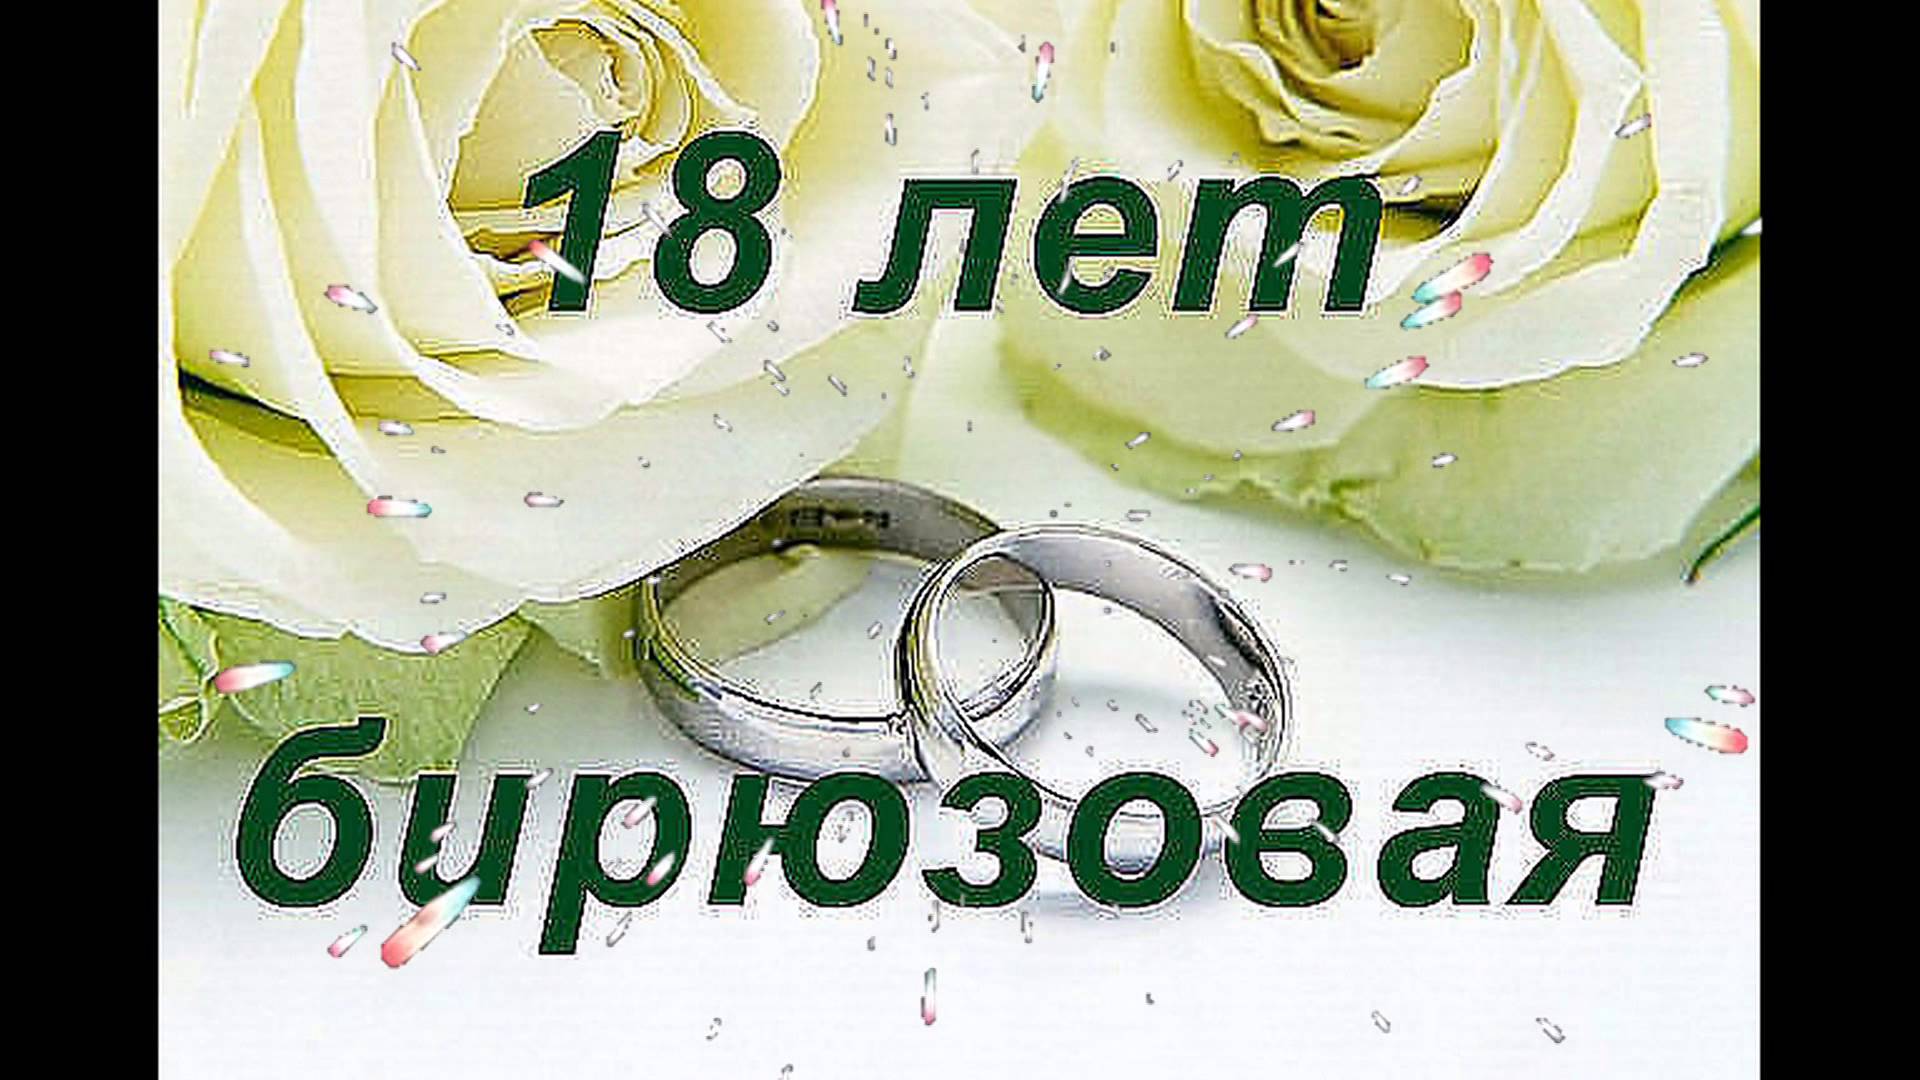 Поздравления С 18 Летием Свадьбы Своими Словами